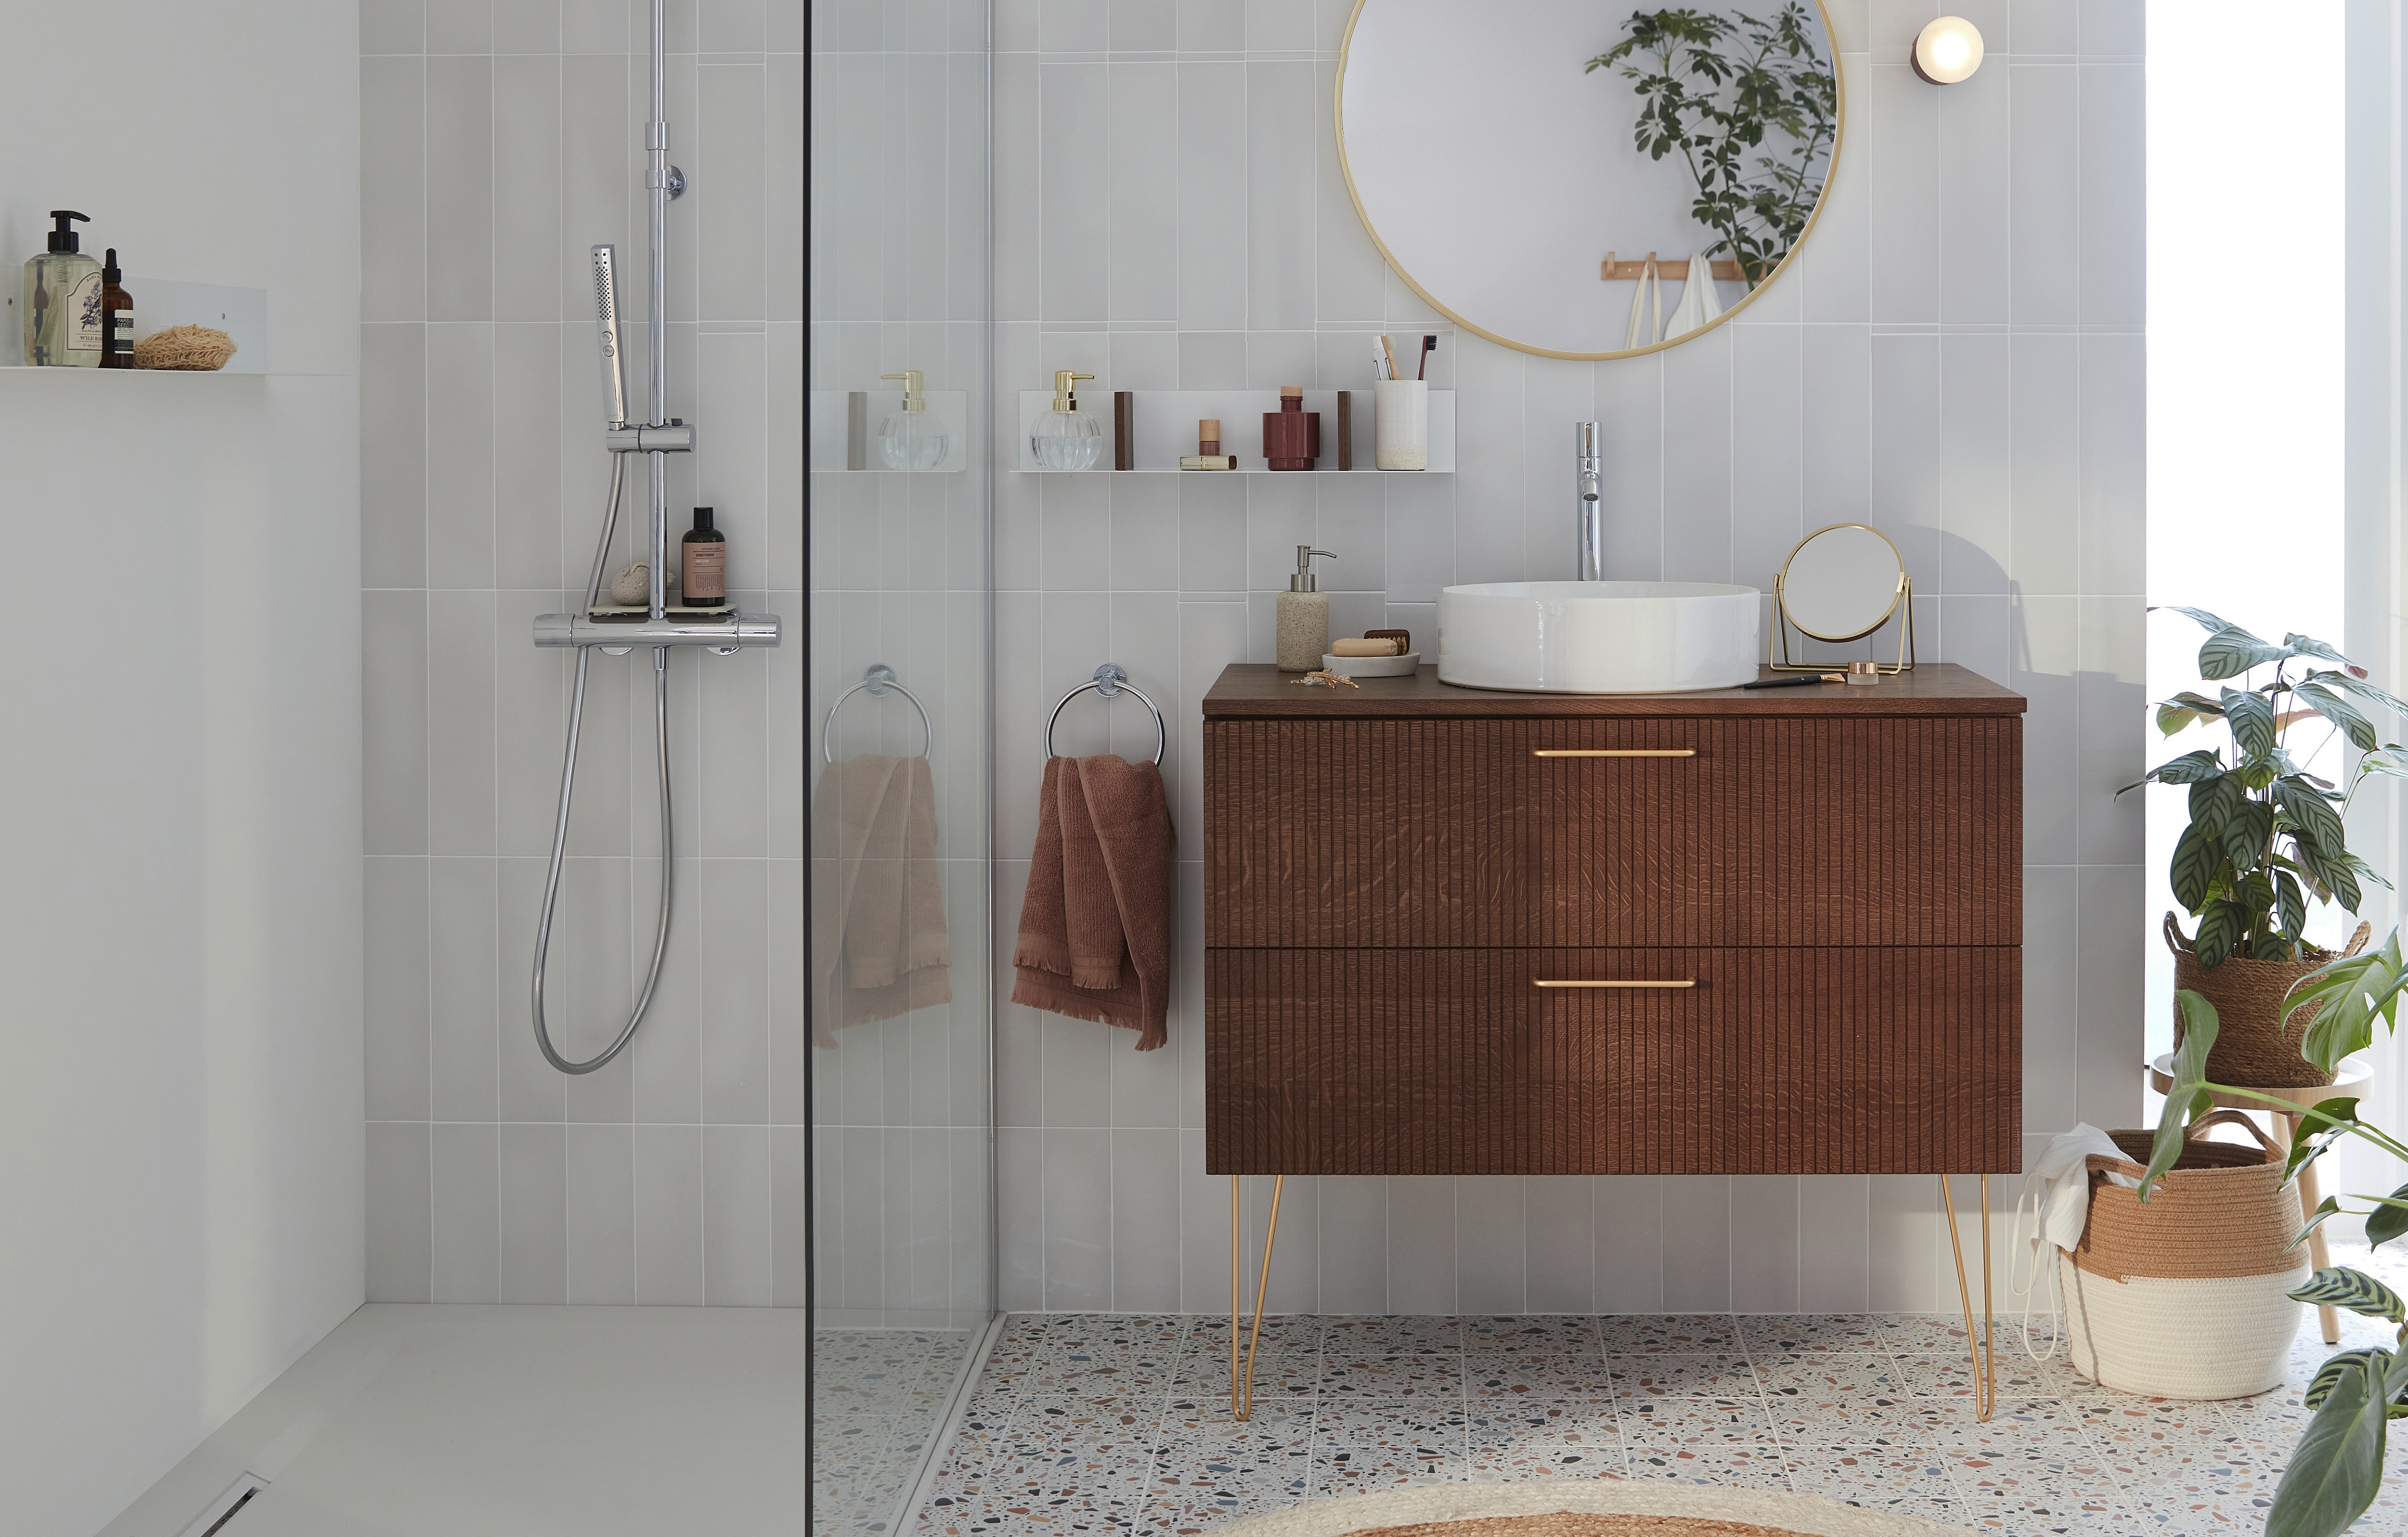 Installation d'une petite salle de bain moderne ton clair beige marron